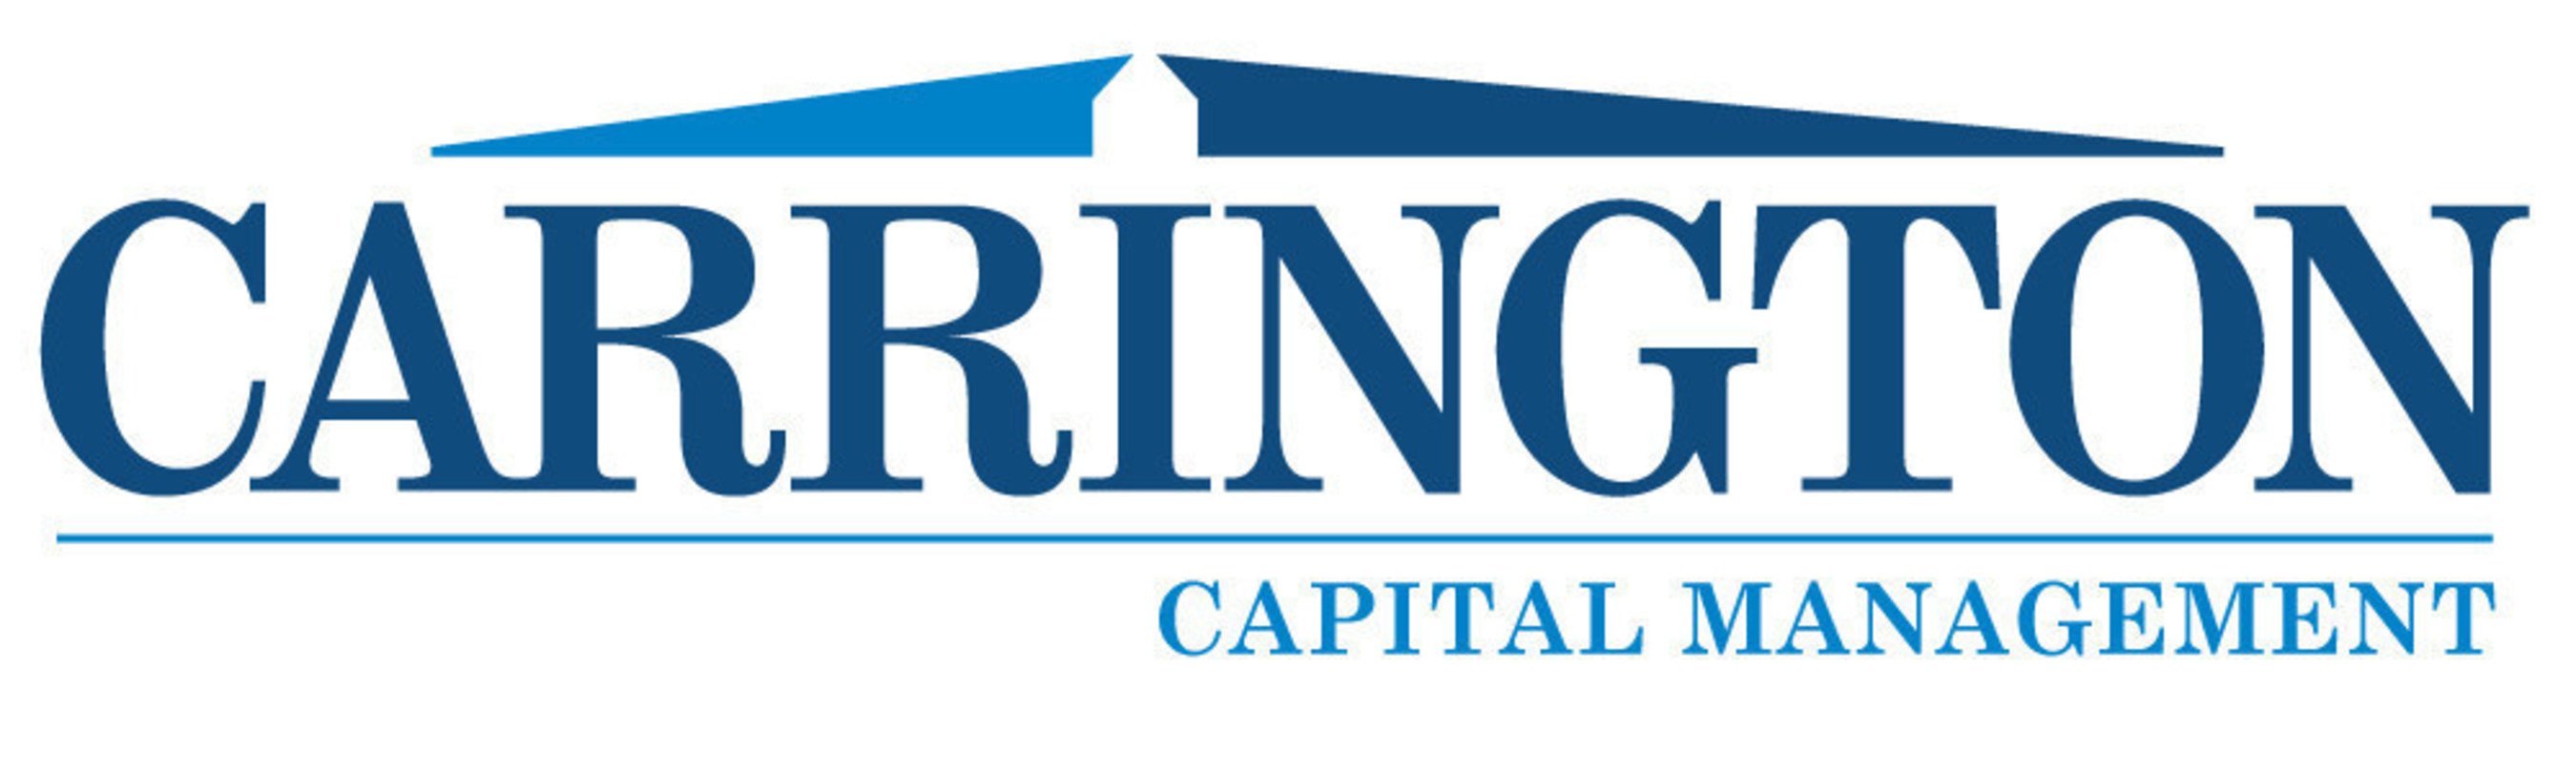 Carrington Capital